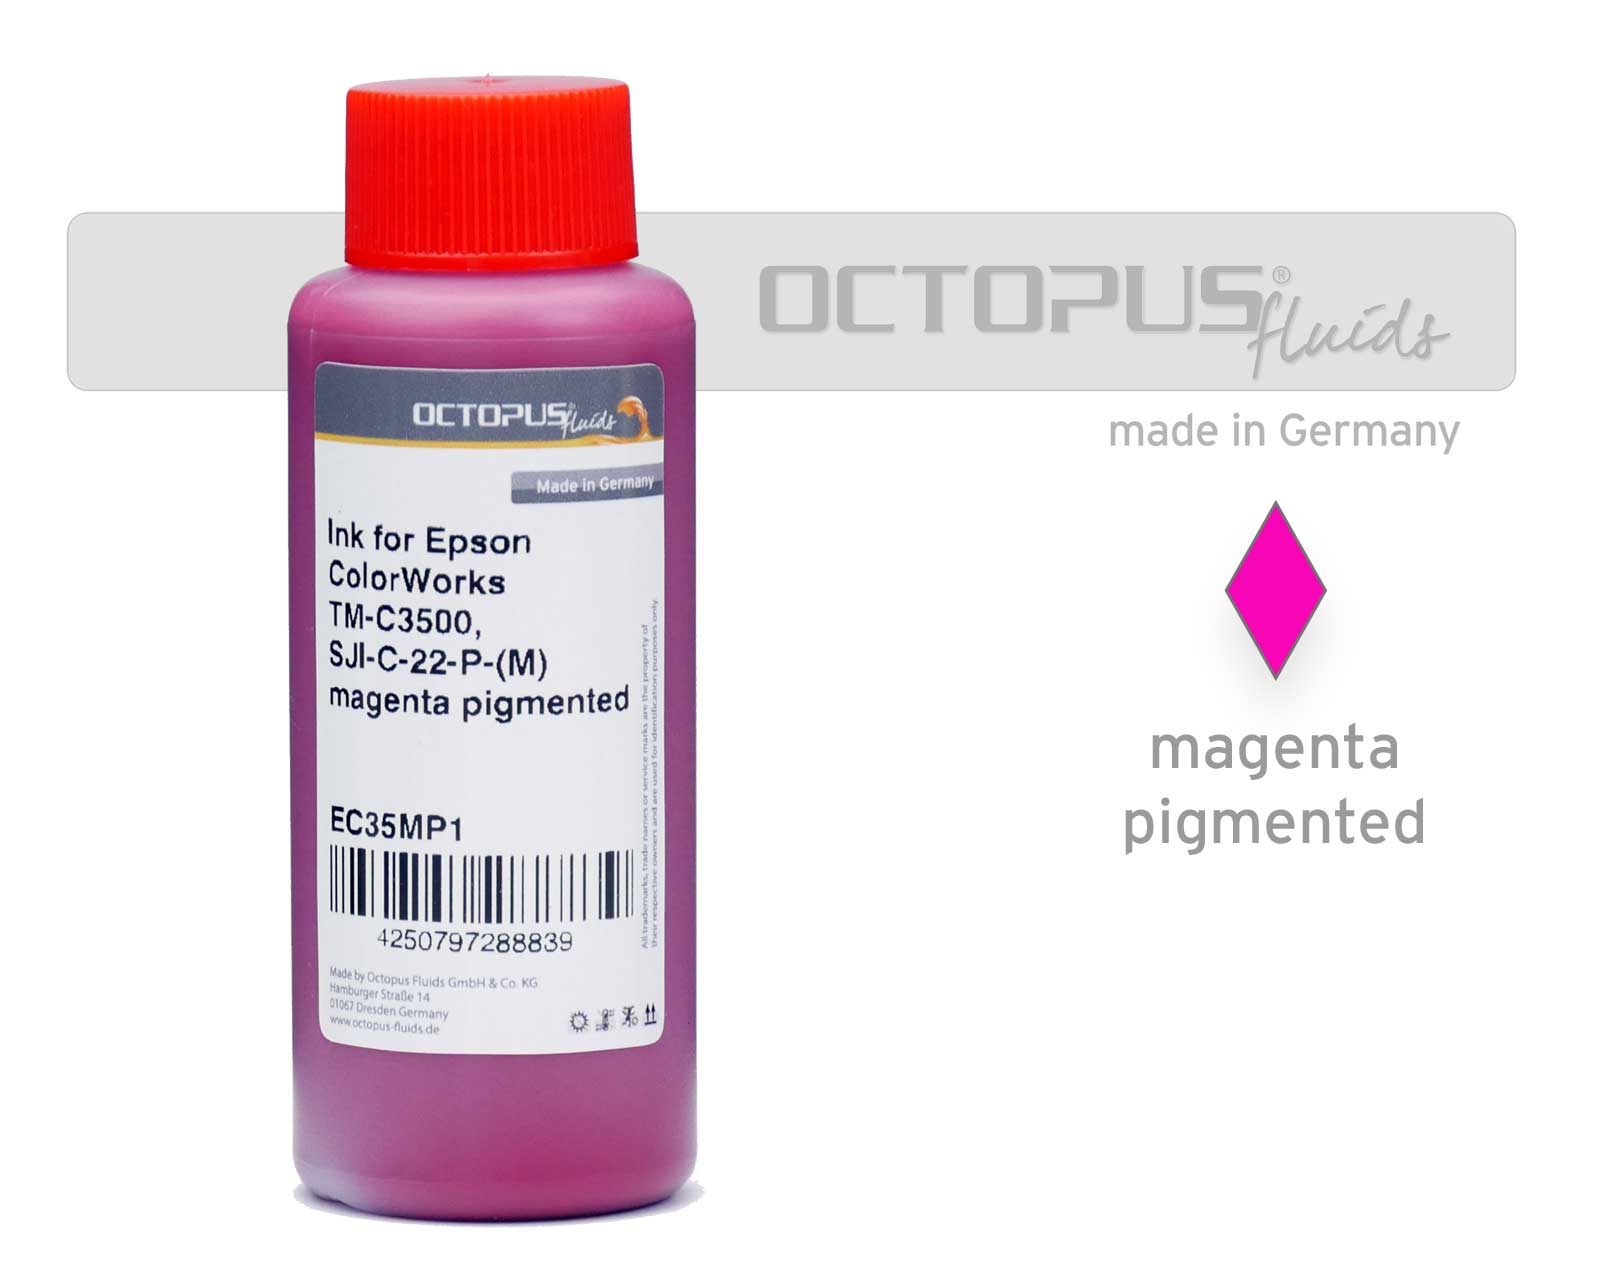 Inchiostro di ricarica per Epson ColorWorks TM-C3500, SJI-C-22-P-(M) magenta